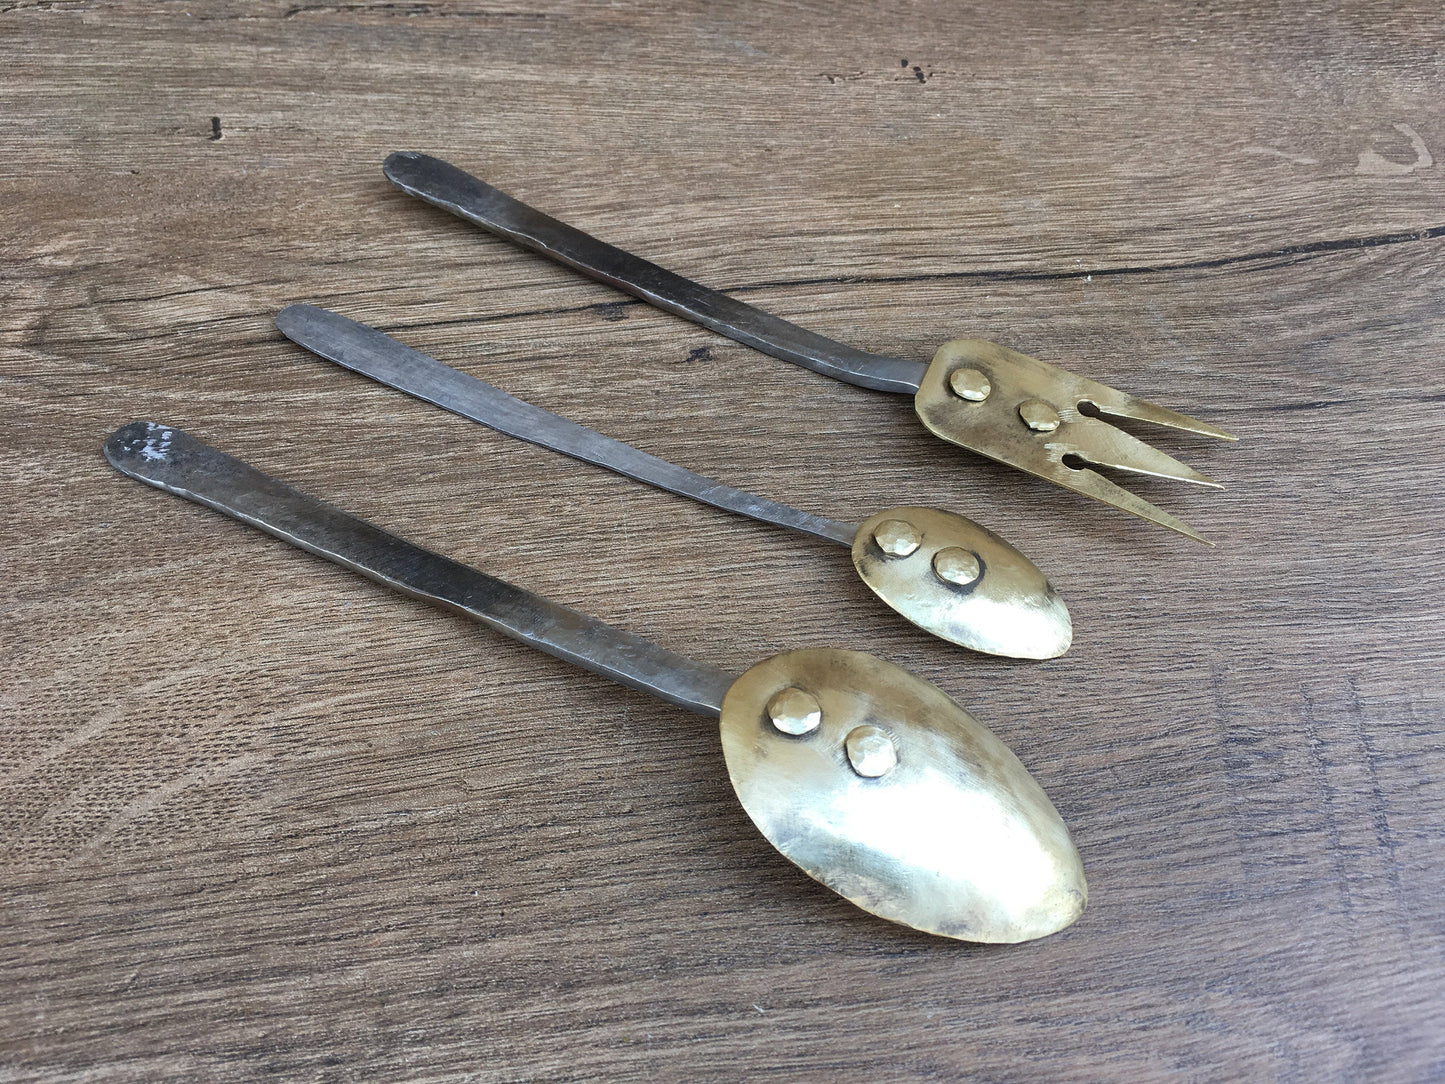 Bronze cutlery, mid century cutlery, midcentury flatware set, fork, cutlery, mid century flatware, medieval fork,mid century spoon,tea spoon